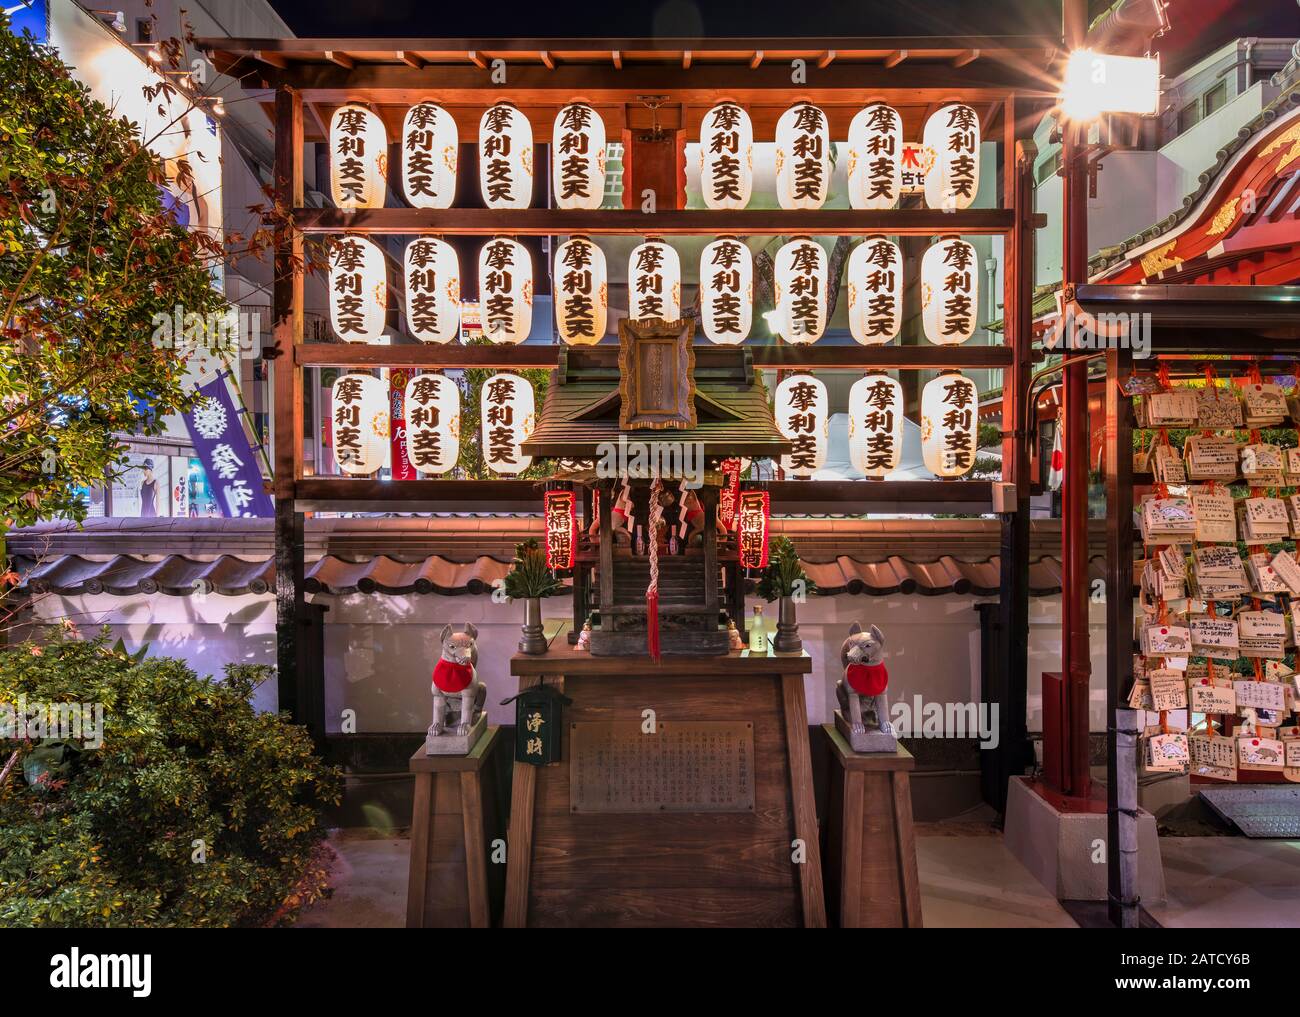 Tokyo, giappone - 02 gennaio 2020: Santuario Shinto di Ishibashi Inari dedicato alla divinità Inari Fox nel tempio buddista Tokudaiji decorato con carta la Foto Stock